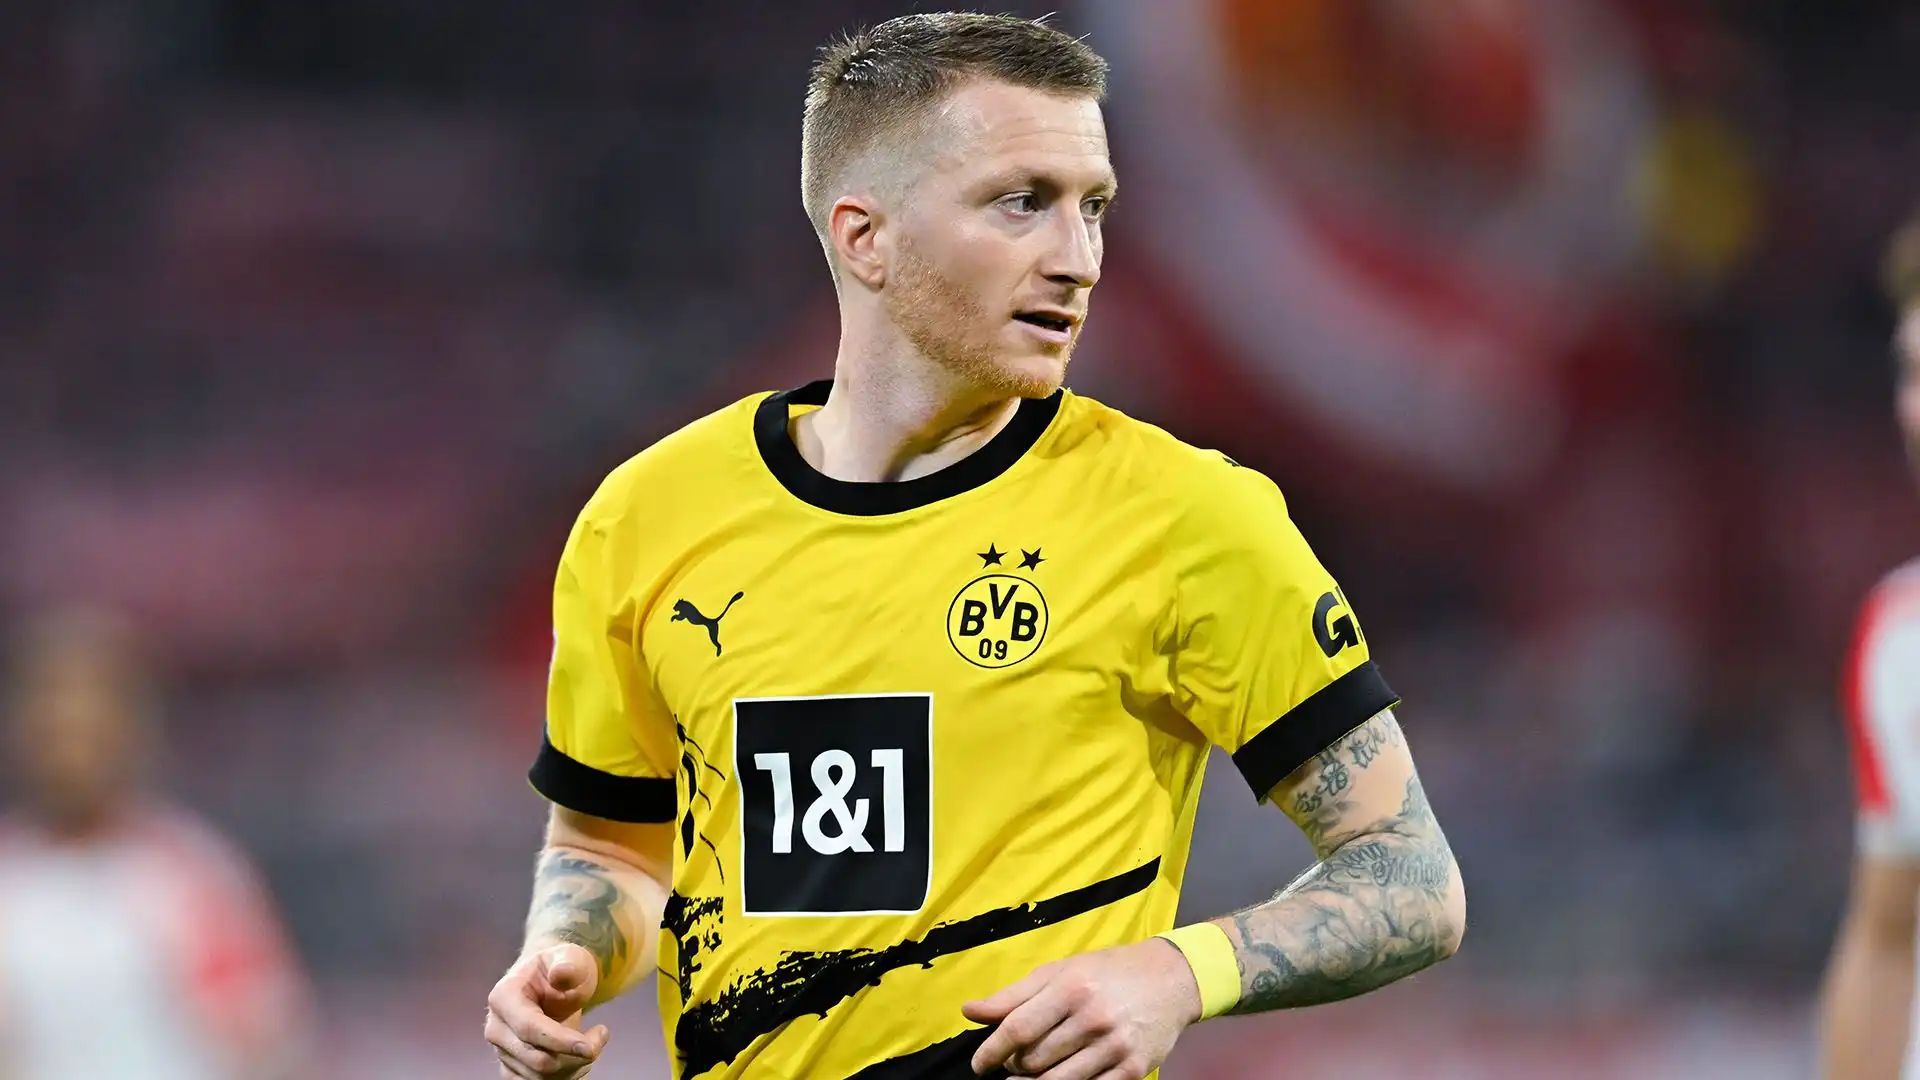 L'attaccante del Borussia Dortmund ha voglia di proseguire la sua carriera, ma non continuerà in Bundesliga